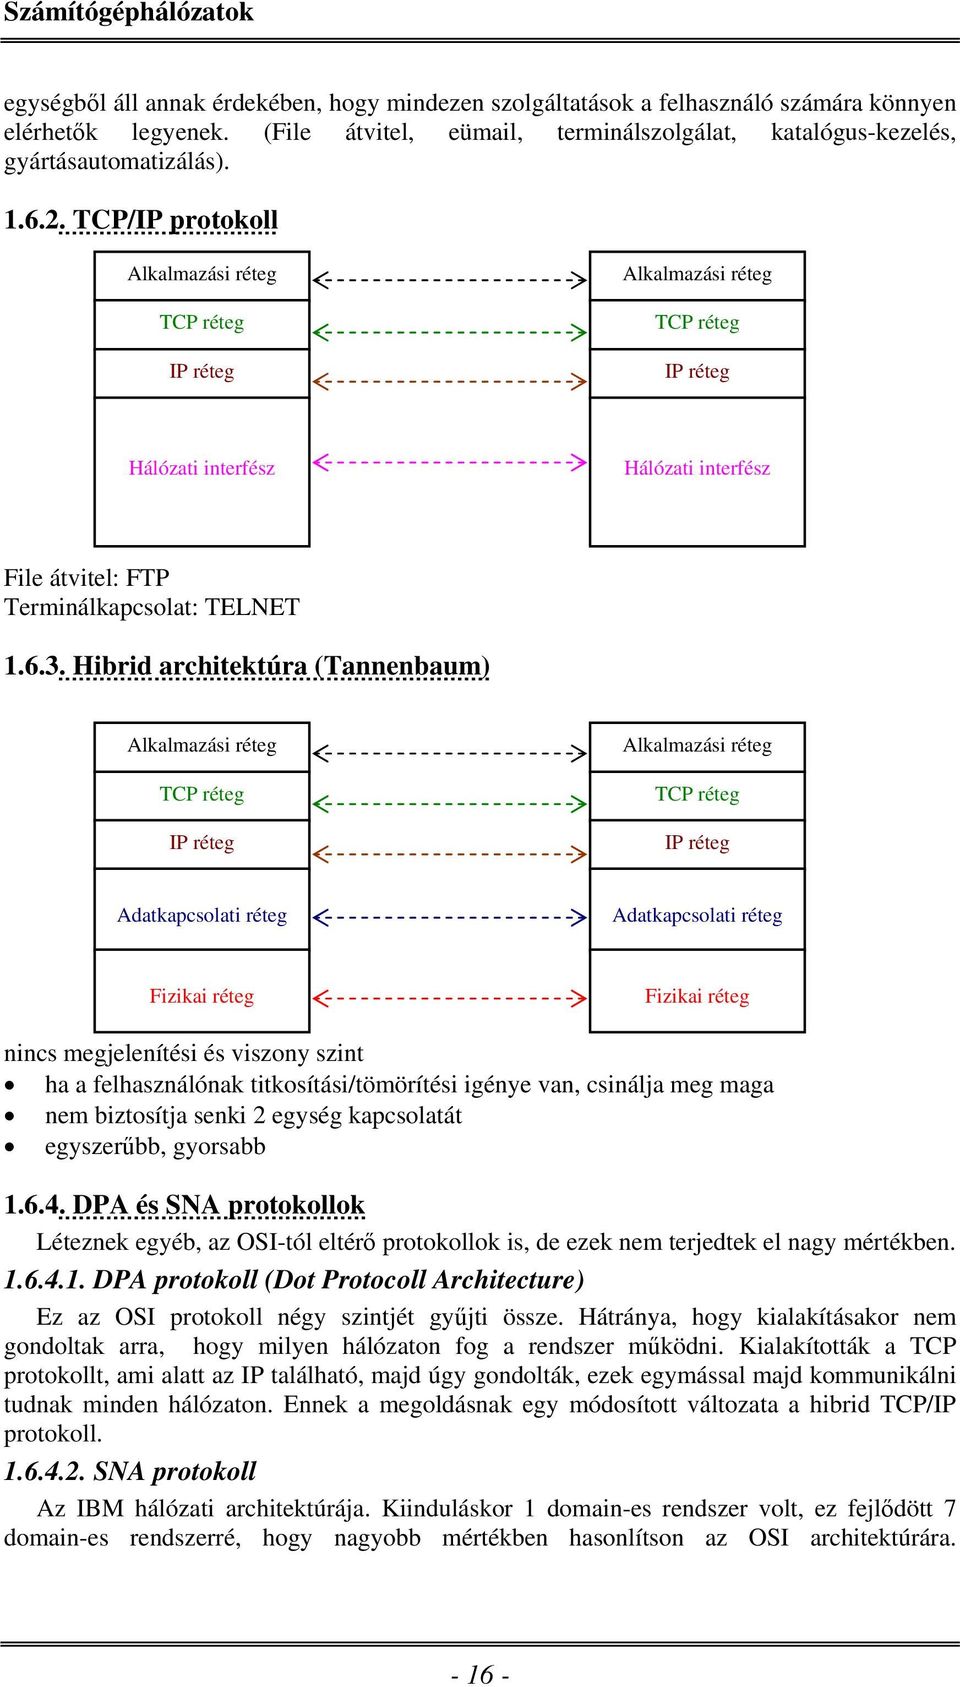 Hibrid architektúra (Tannenbaum) Alkalmazási réteg TCP réteg IP réteg Alkalmazási réteg TCP réteg IP réteg Adatkapcsolati réteg Adatkapcsolati réteg Fizikai réteg Fizikai réteg nincs megjelenítési és